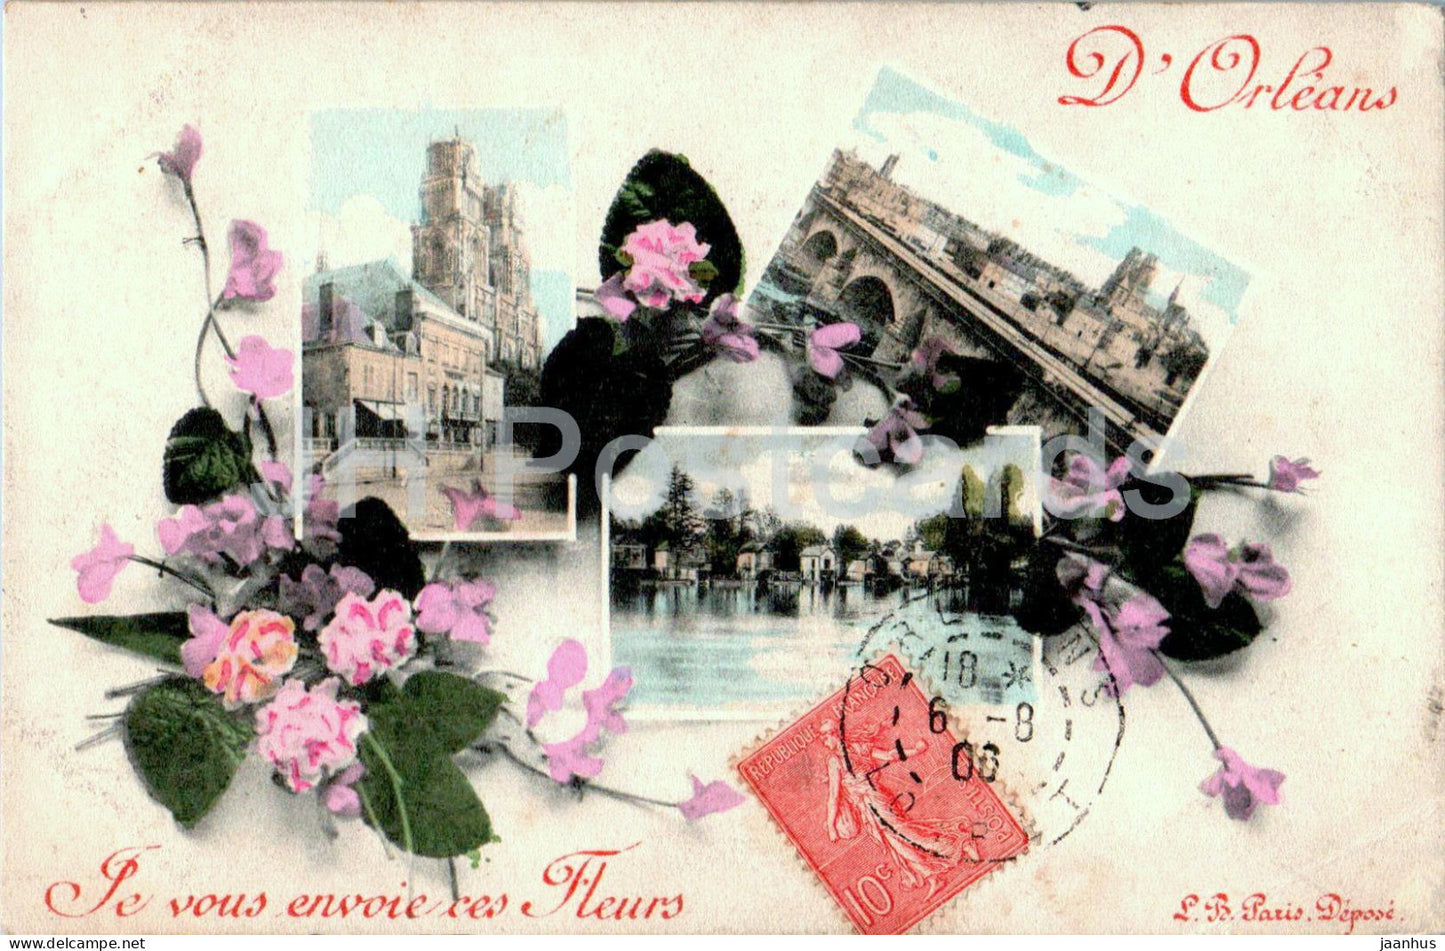 D'Orleans - Je vous envoie ces Fleurs - old postcard - 1906 - France - used - JH Postcards